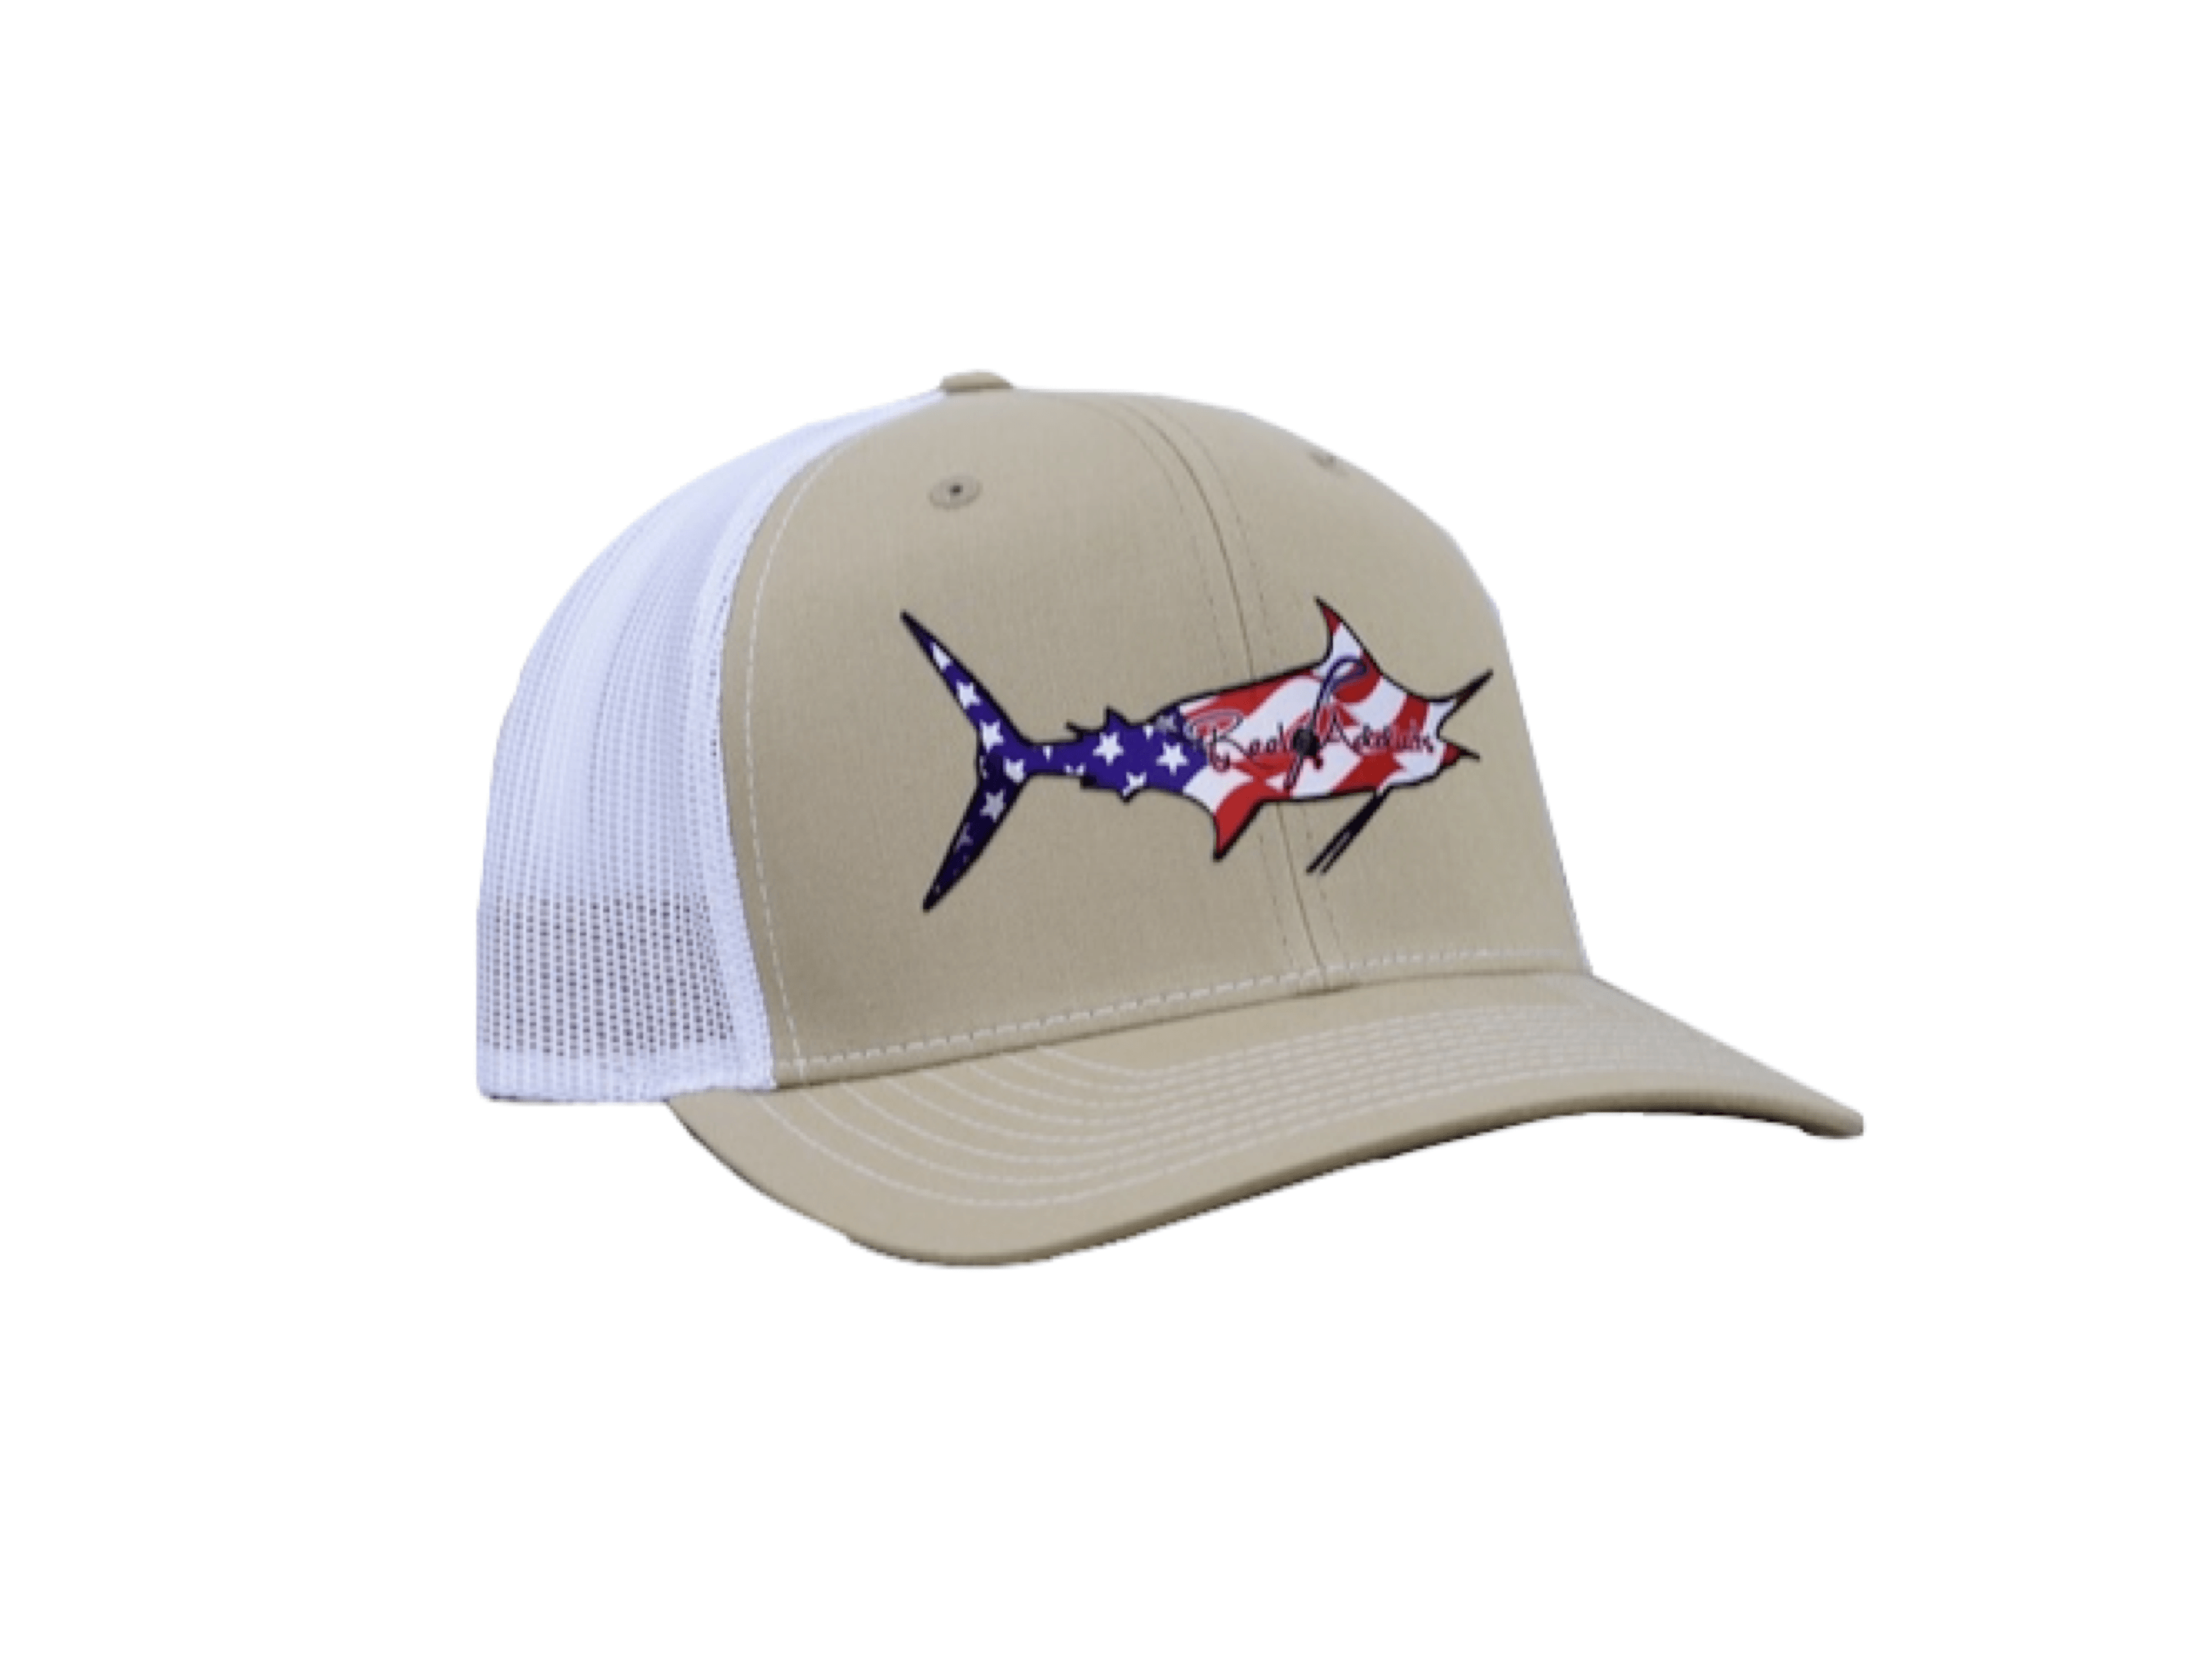 Penn Baseball Cap Fishing Hats & Headwear for sale